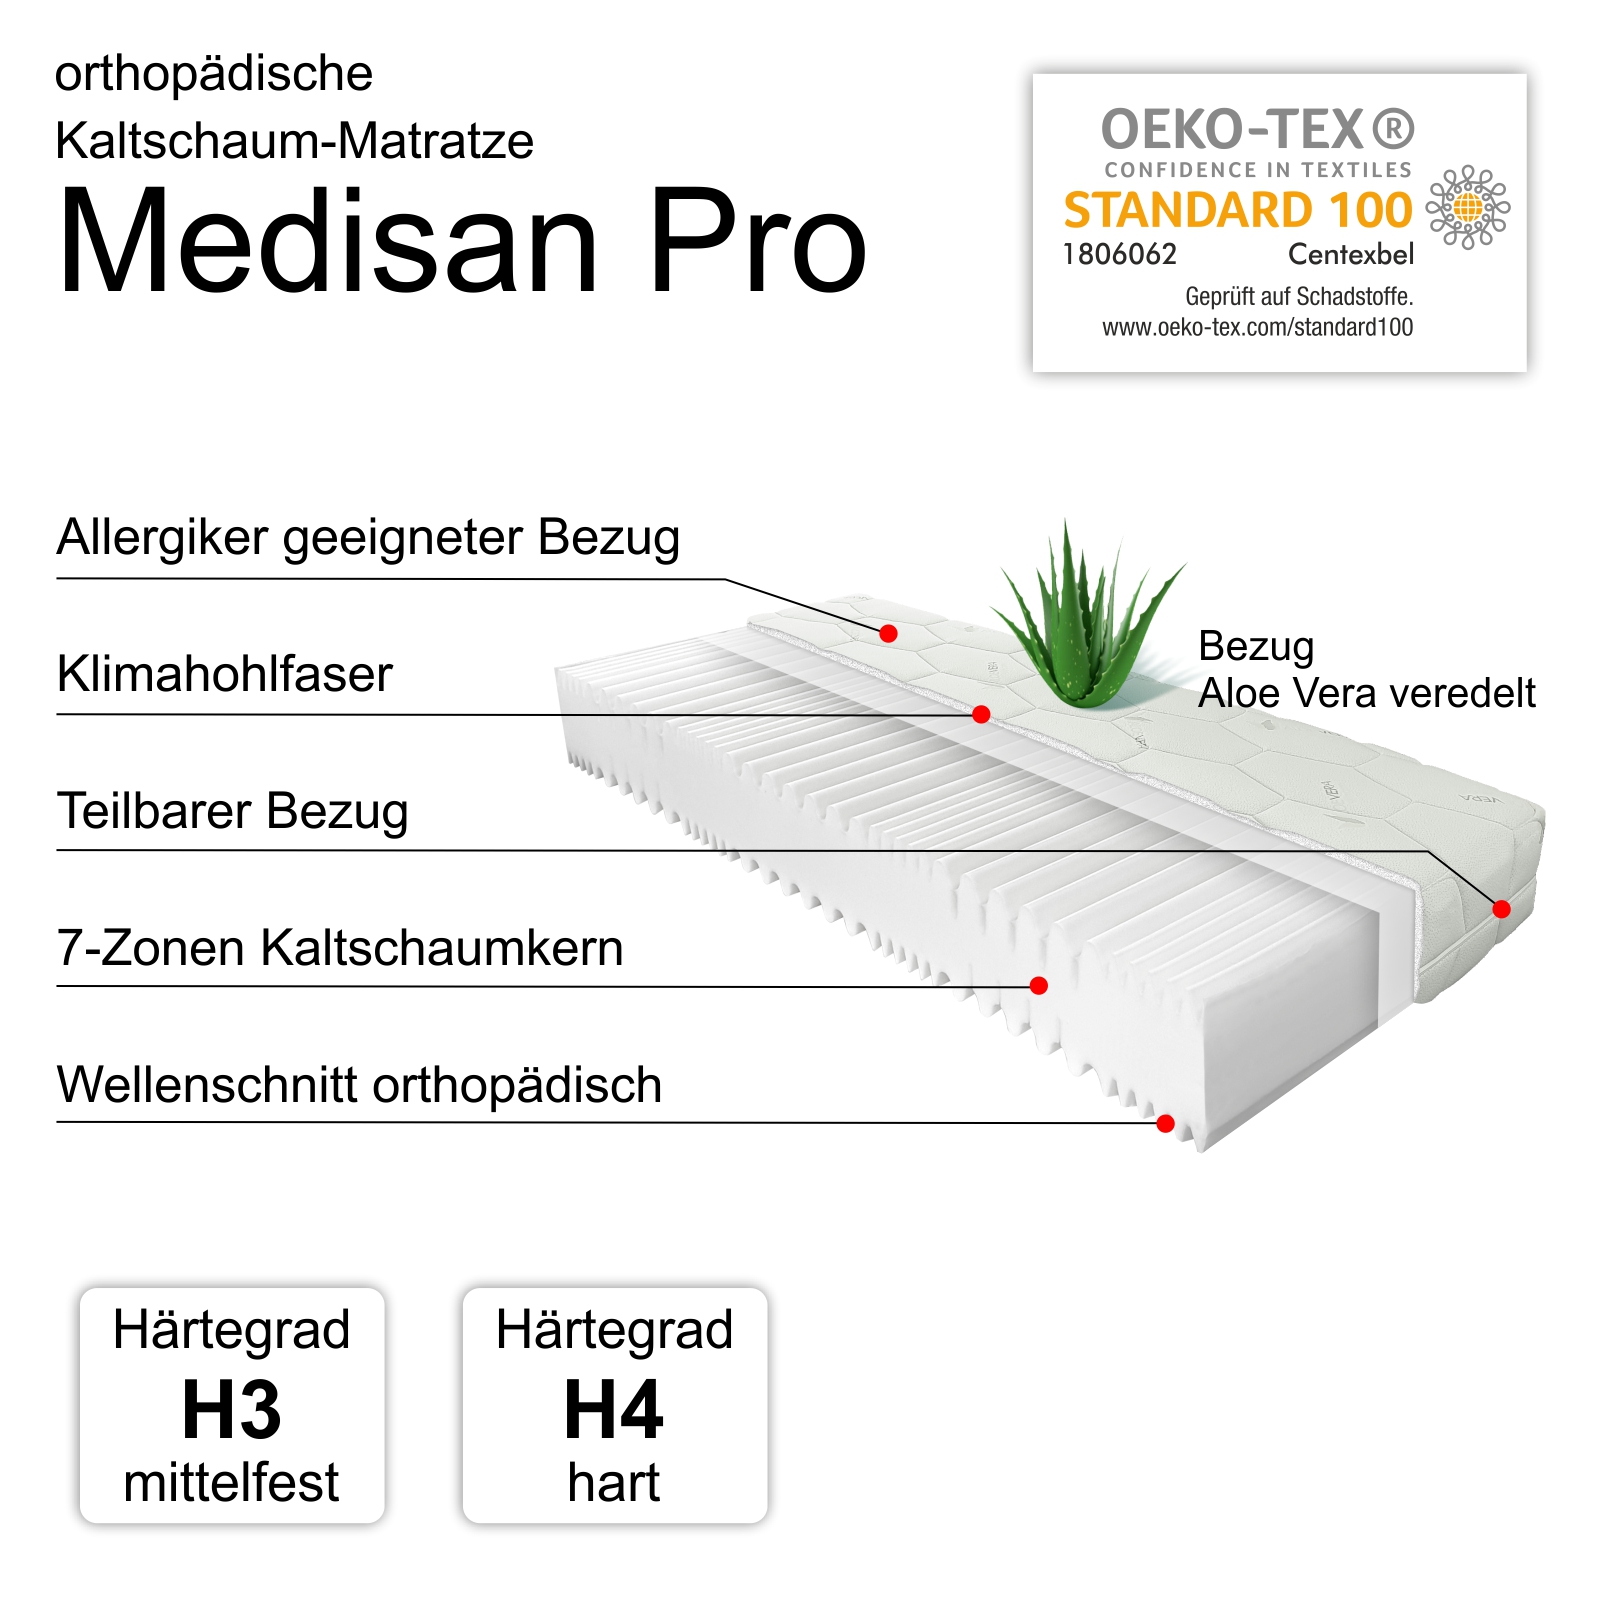 Kaltschaummatratze Medisan Pro, 7-Zonen Profil